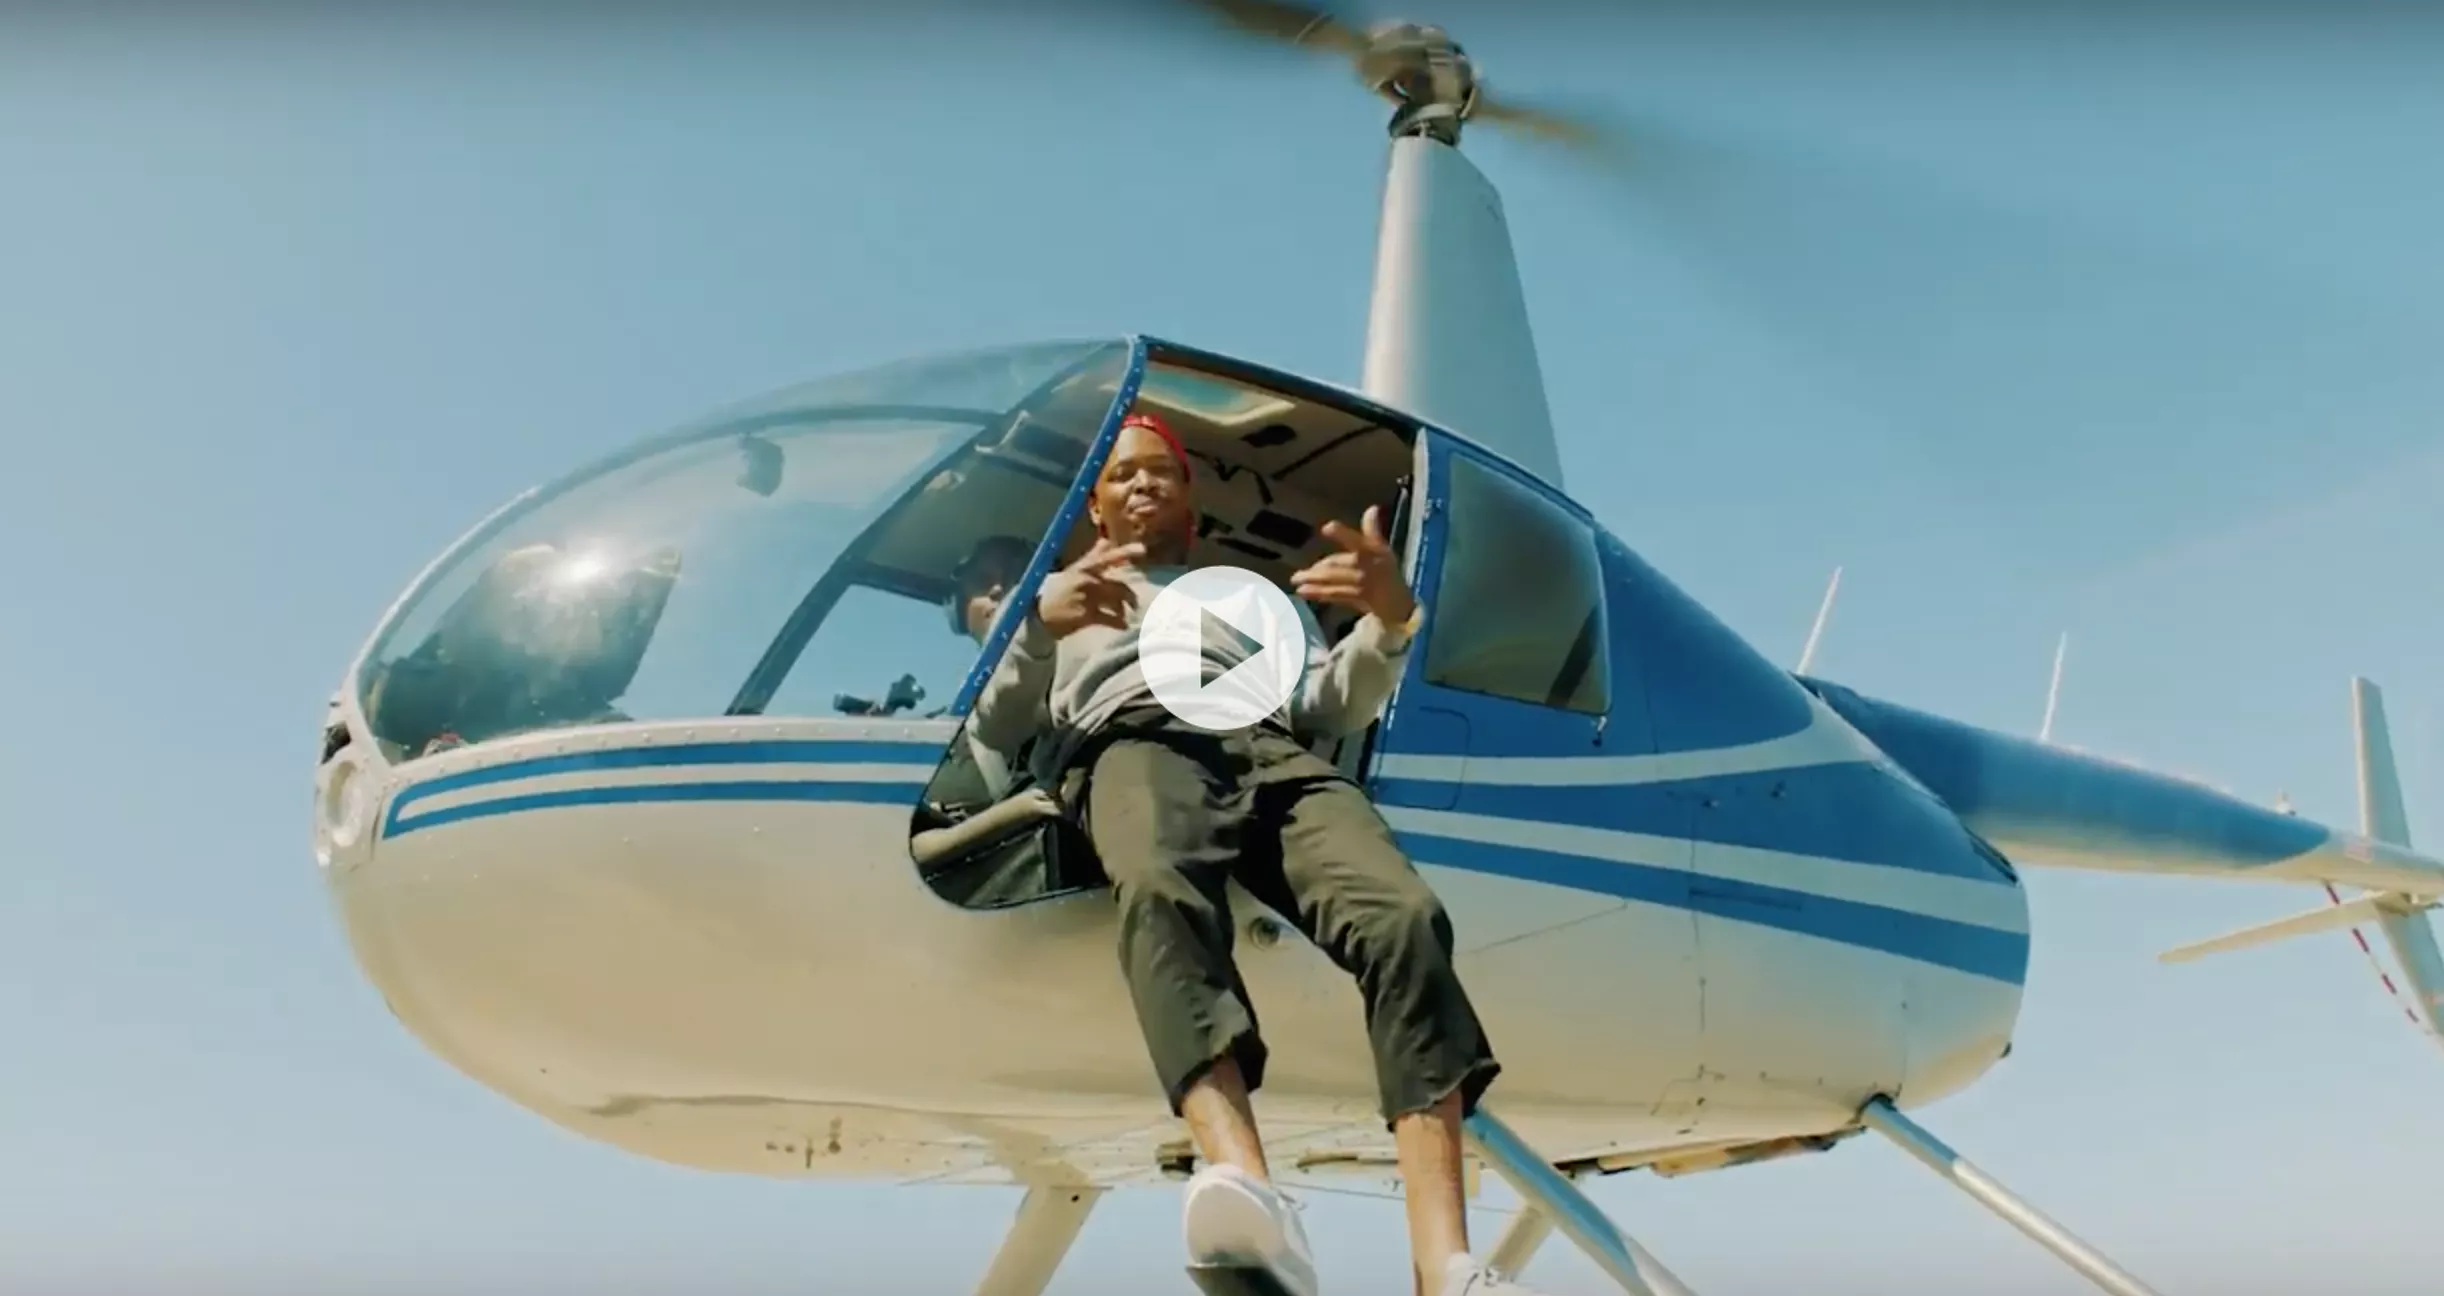 Se ny blærerøvsvideo fra rapperen YG – med Drake i helikopter